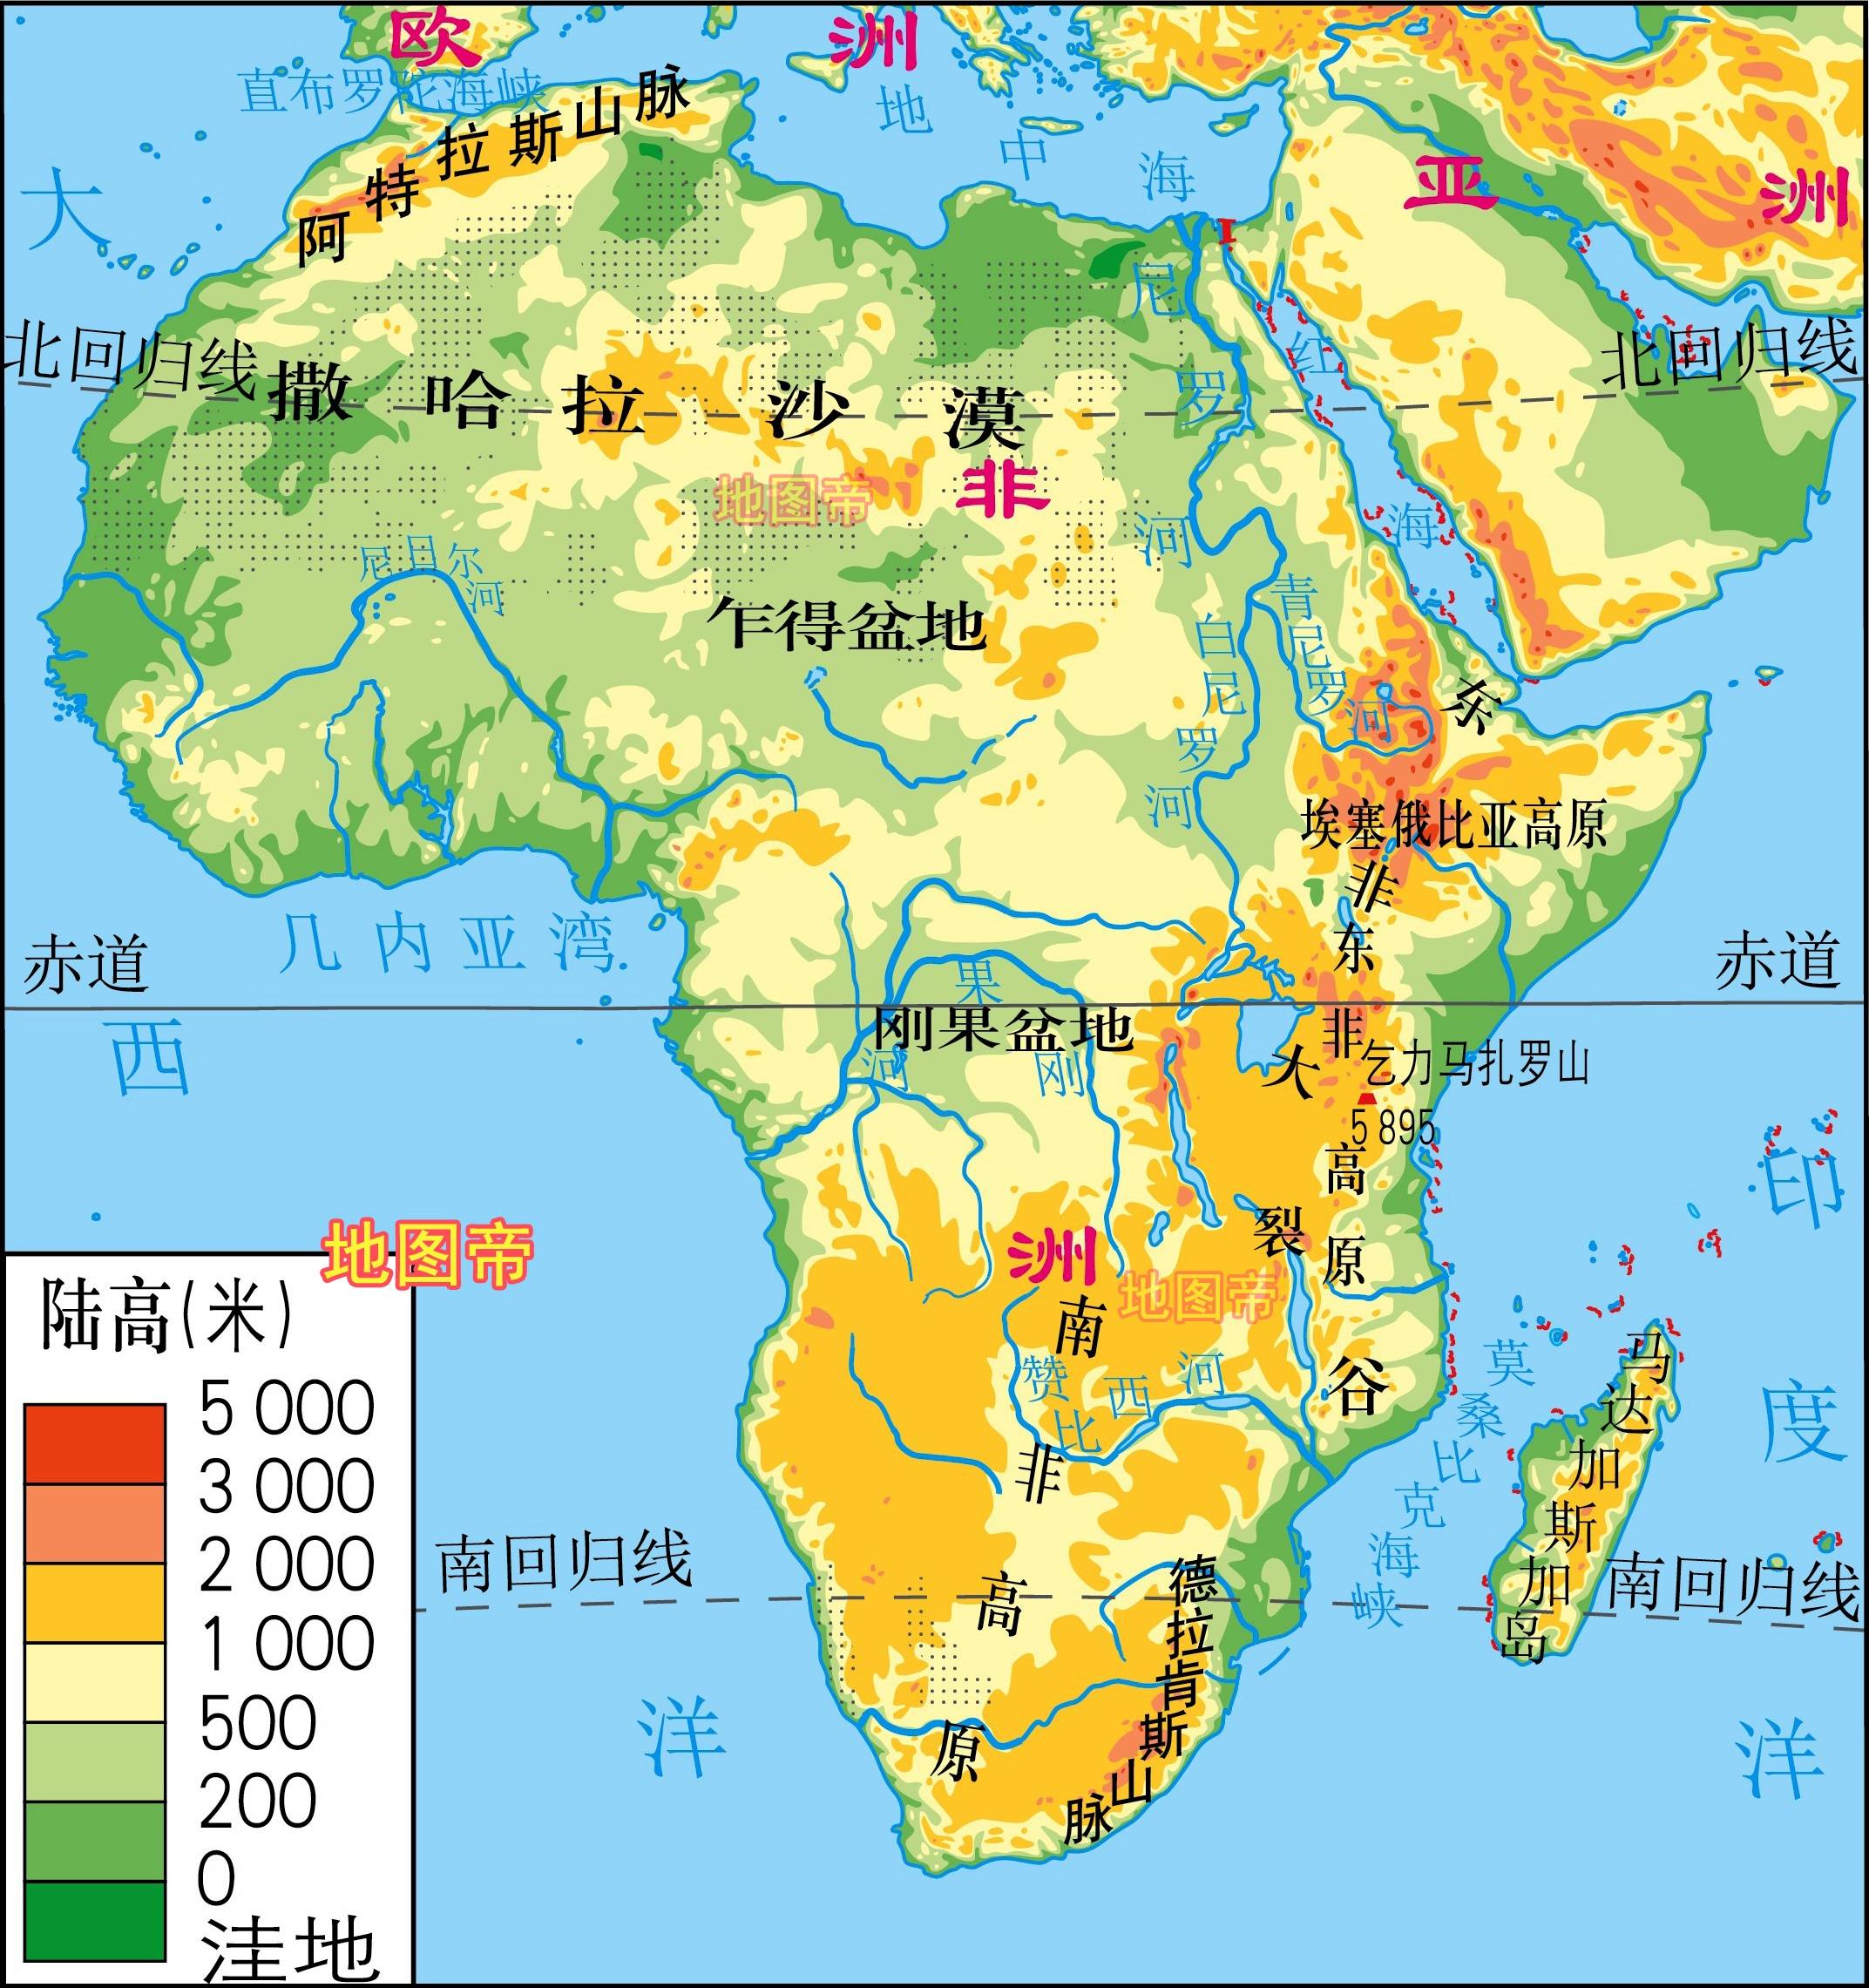 非洲以撒哈拉沙漠为分界,以北阿拉伯人居多,是白人,信伊斯兰教;以南